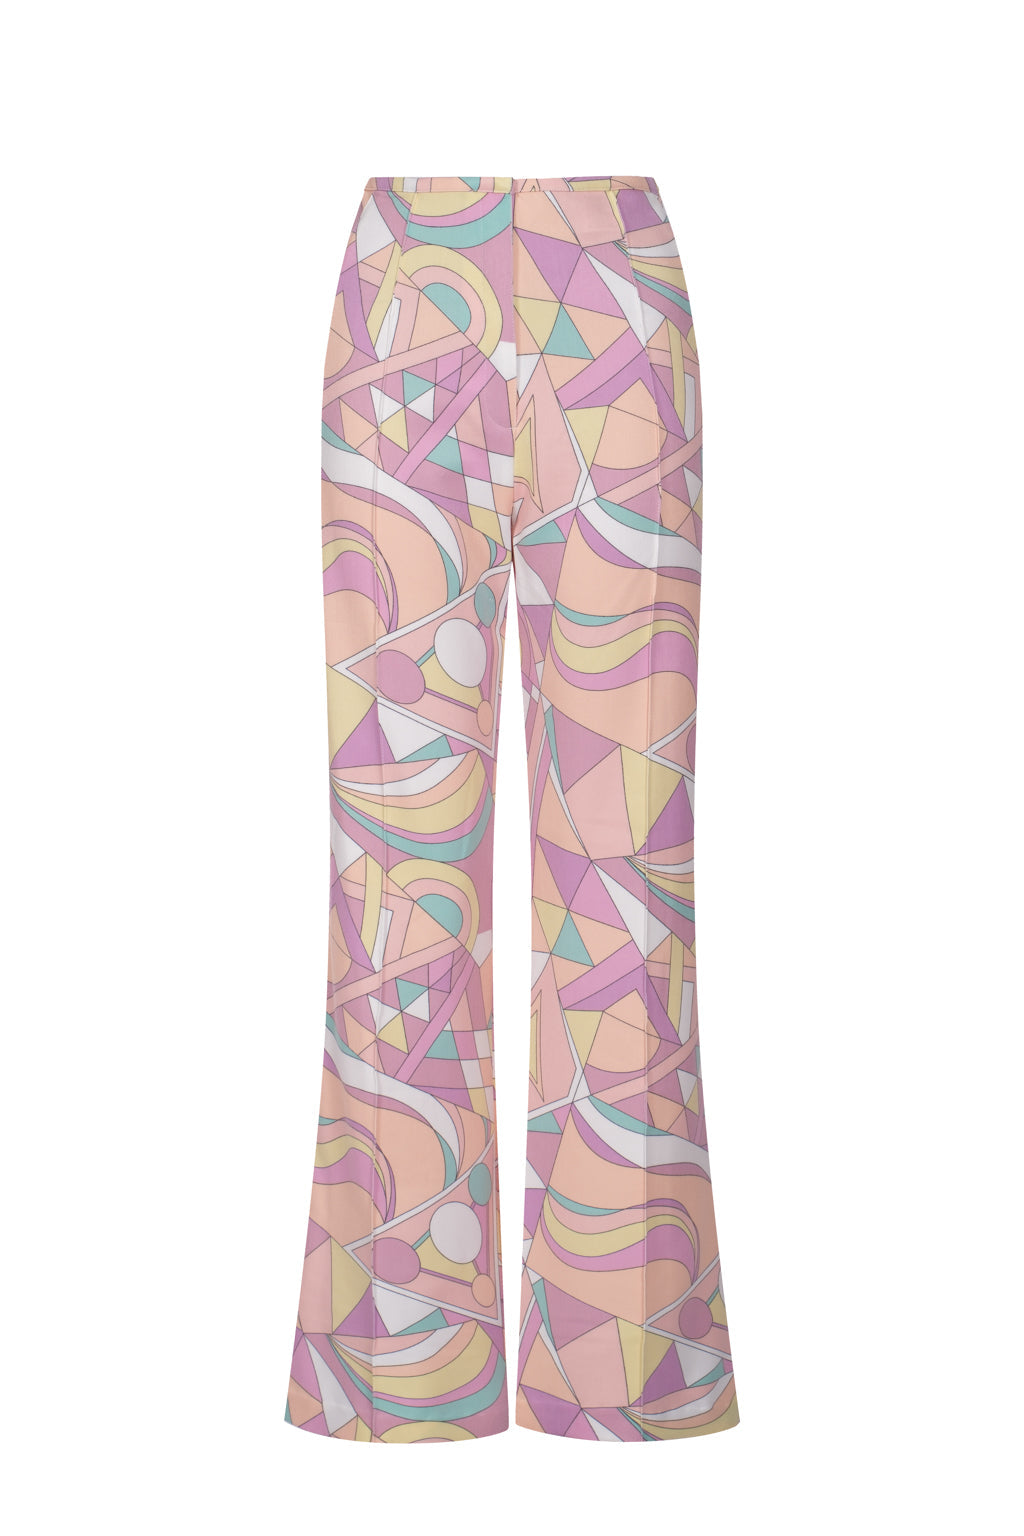 Pantalon droit taille haute à motif géométrique rétro - multicolore